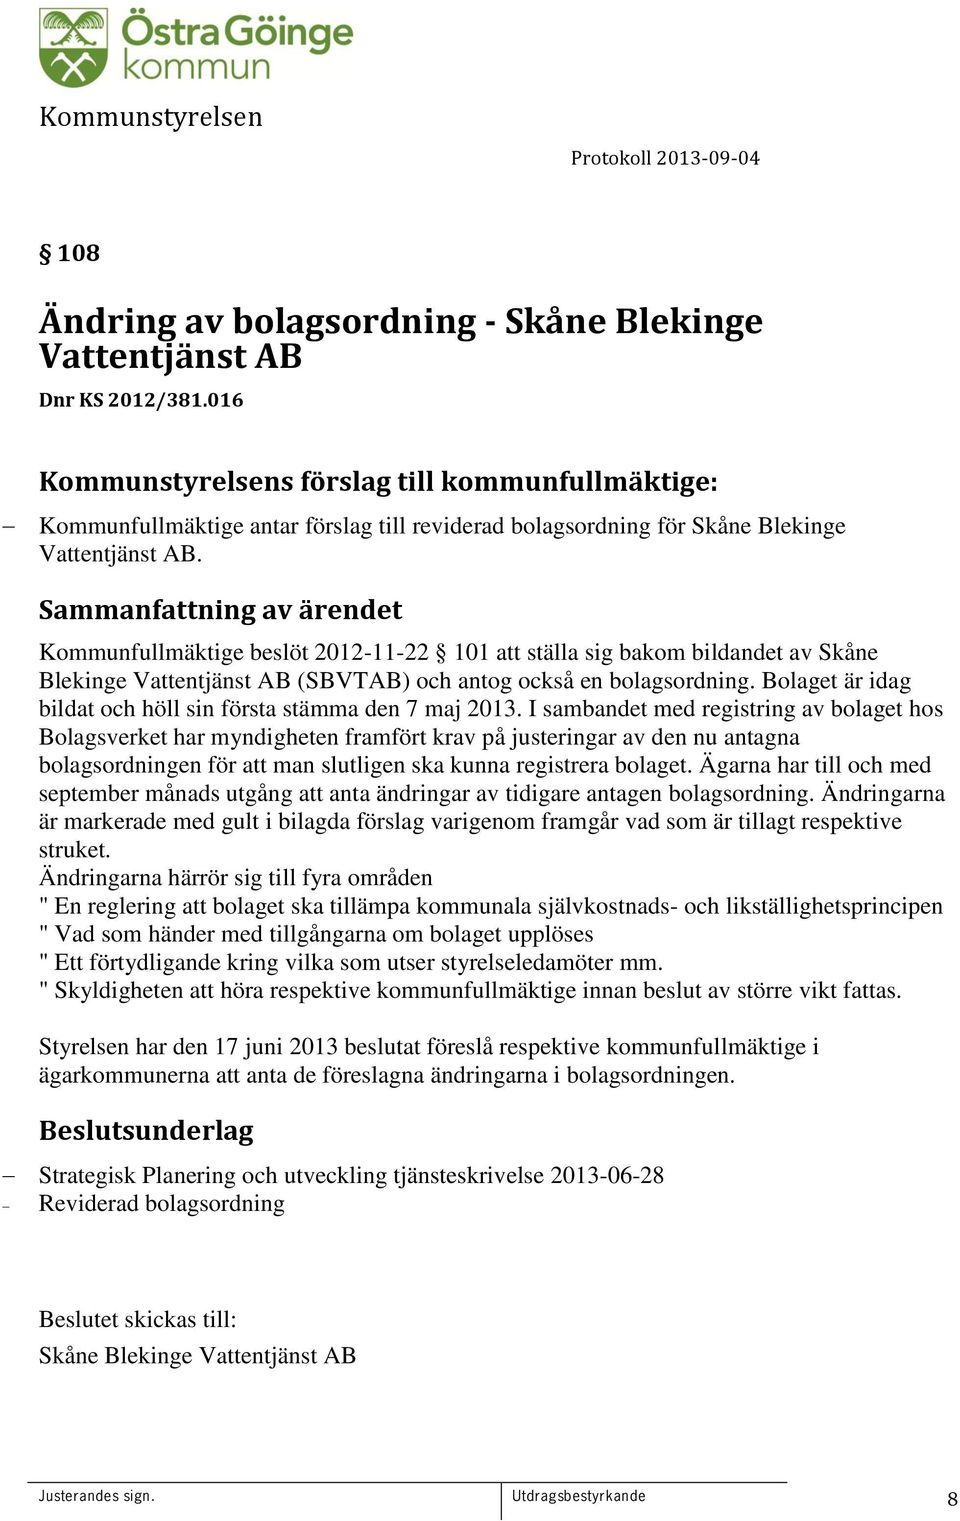 Kommunfullmäktige beslöt 2012-11-22 101 att ställa sig bakom bildandet av Skåne Blekinge Vattentjänst AB (SBVTAB) och antog också en bolagsordning.